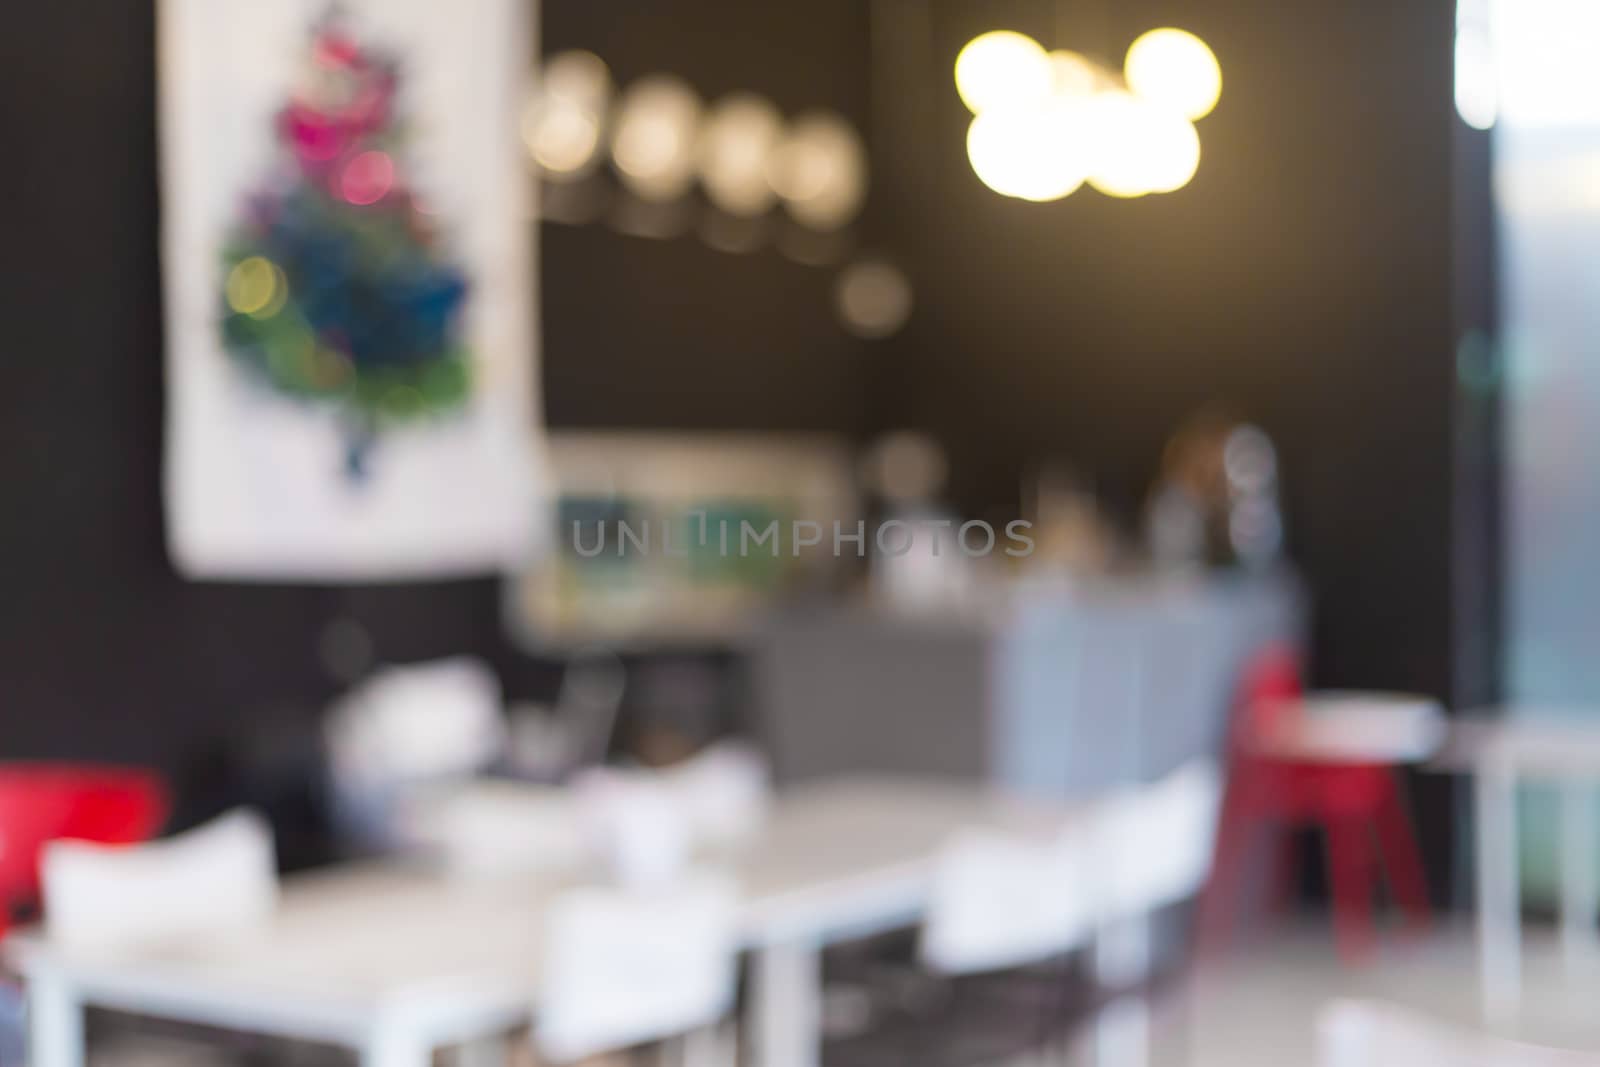 Restaurant Blurred background